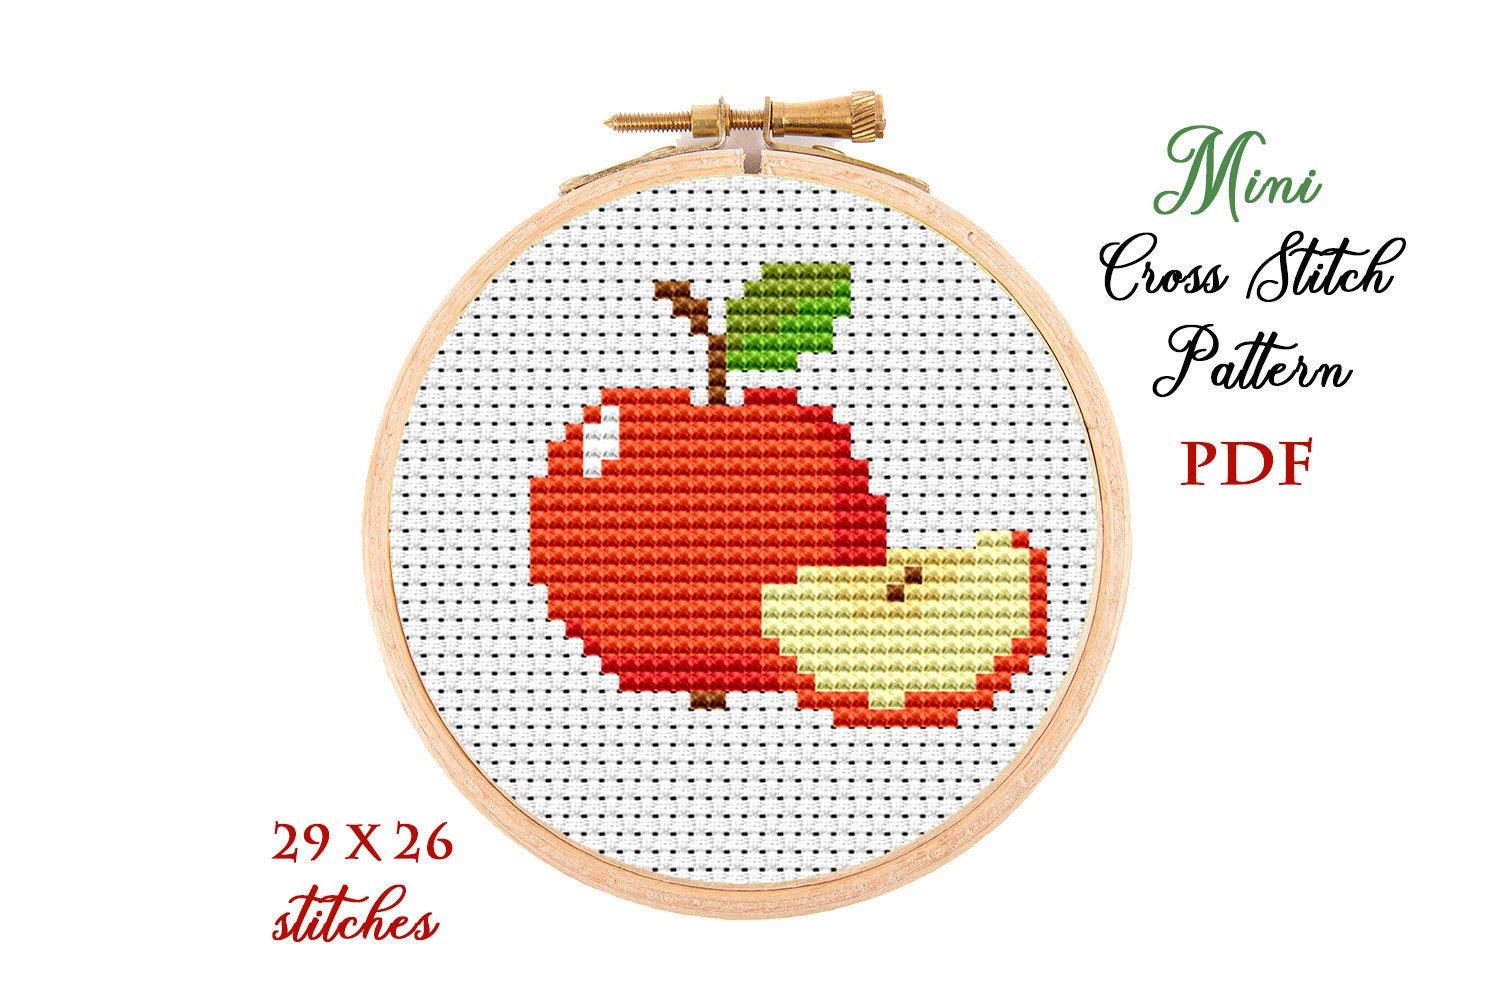 Big Apple Mini Cross Stitch Kit  Posie: Patterns and Kits to